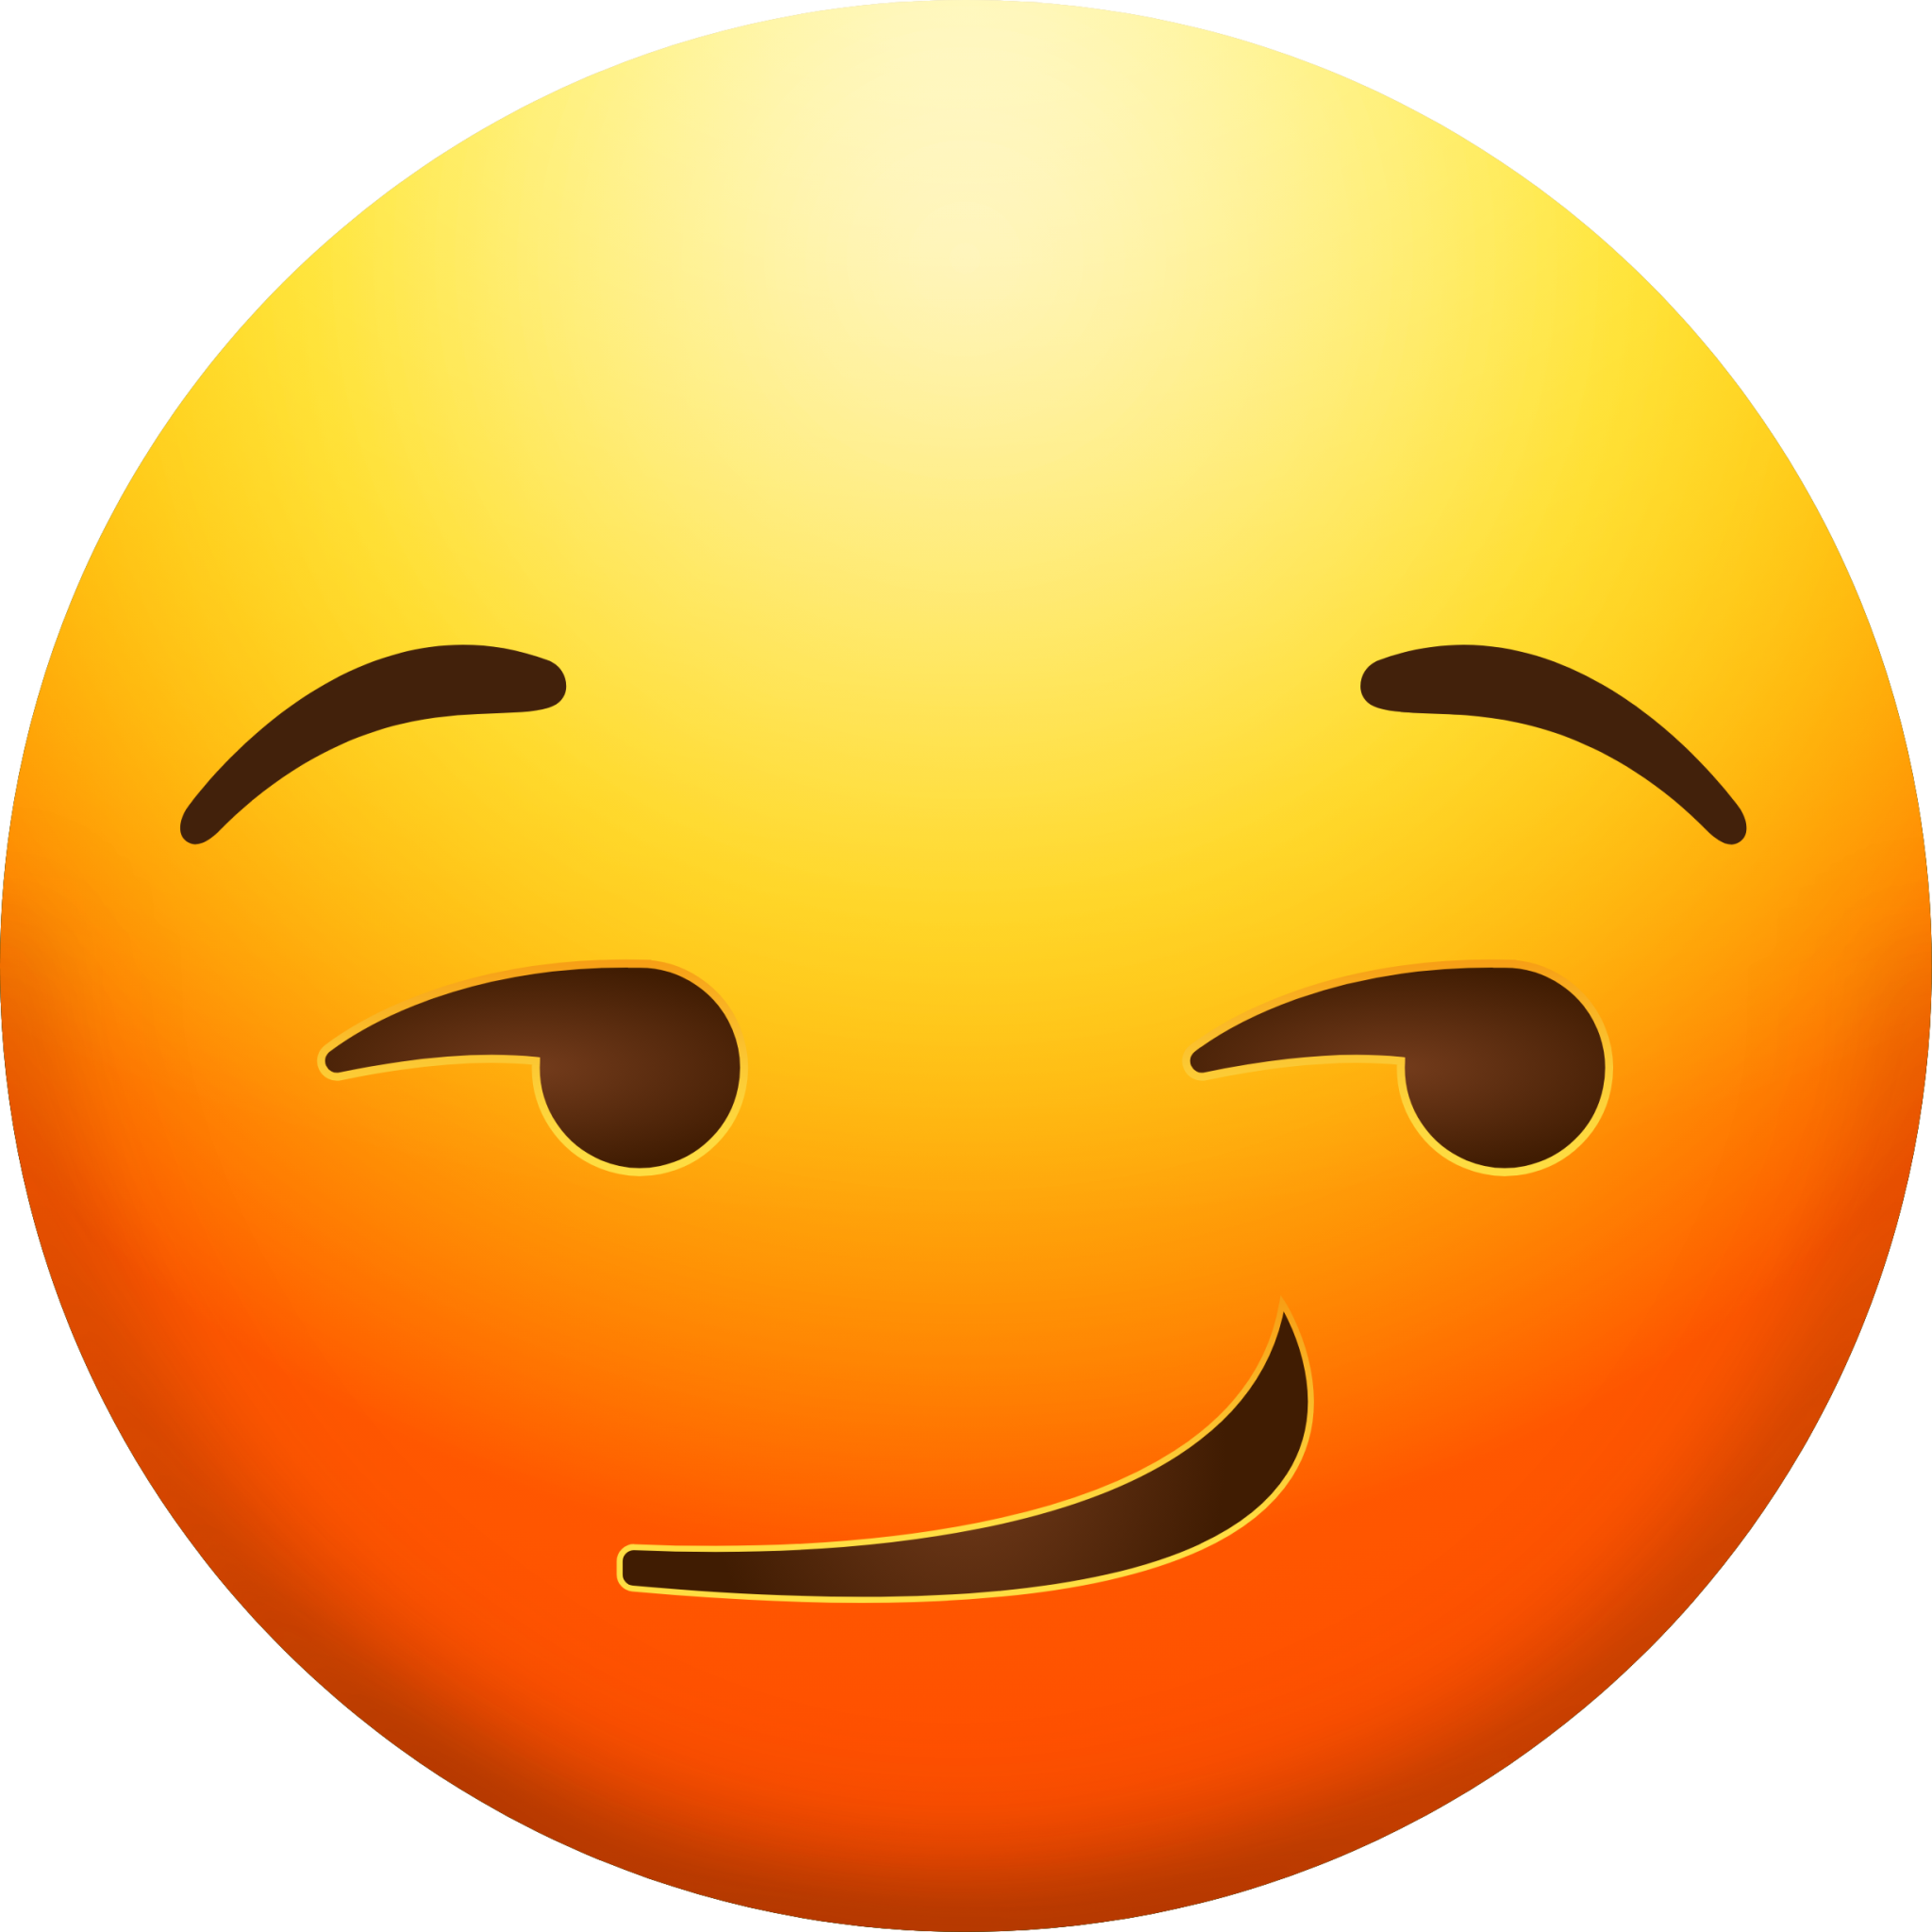 Smirking Face emoji